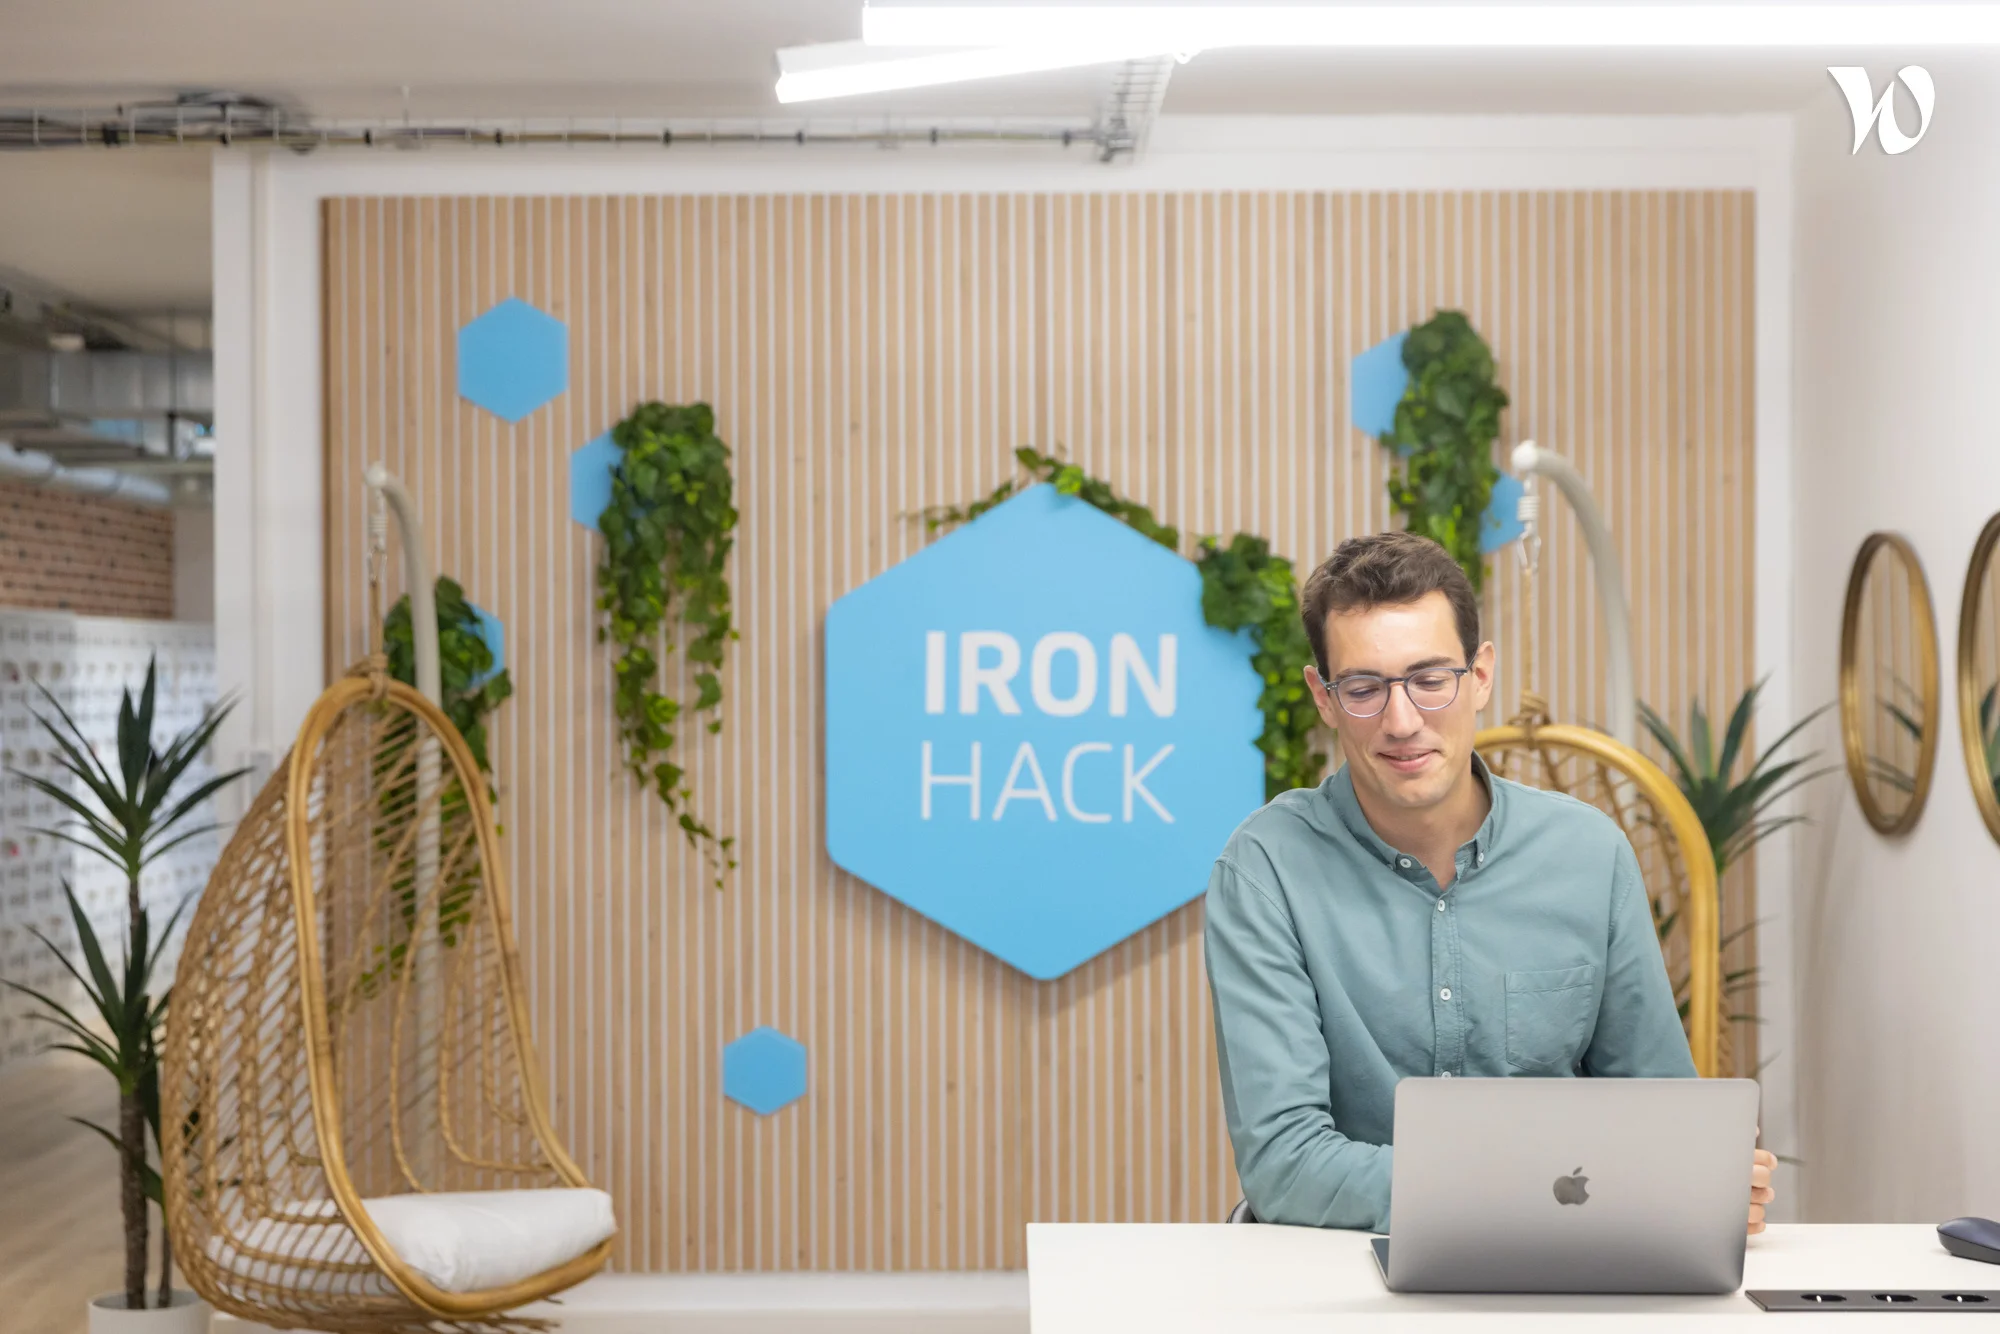 Comment Ironhack capitalise sur sa vitrine pour déployer sa marque employeur et booster ses recrutements